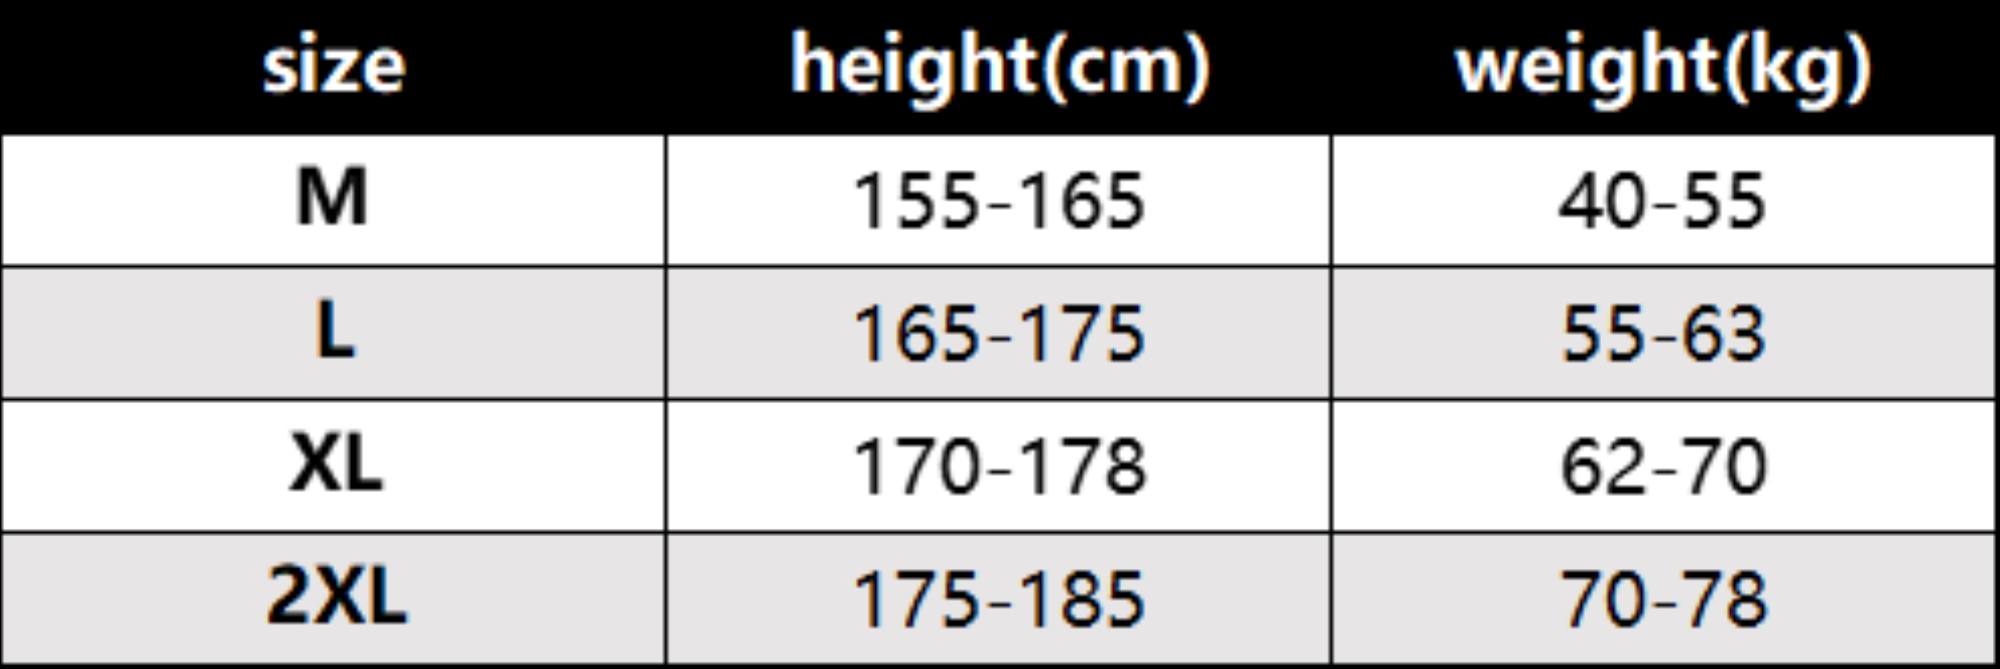 H5c6c46c464914c36a5c130a091269d25R.jpg?width=496&height=166&hash=662